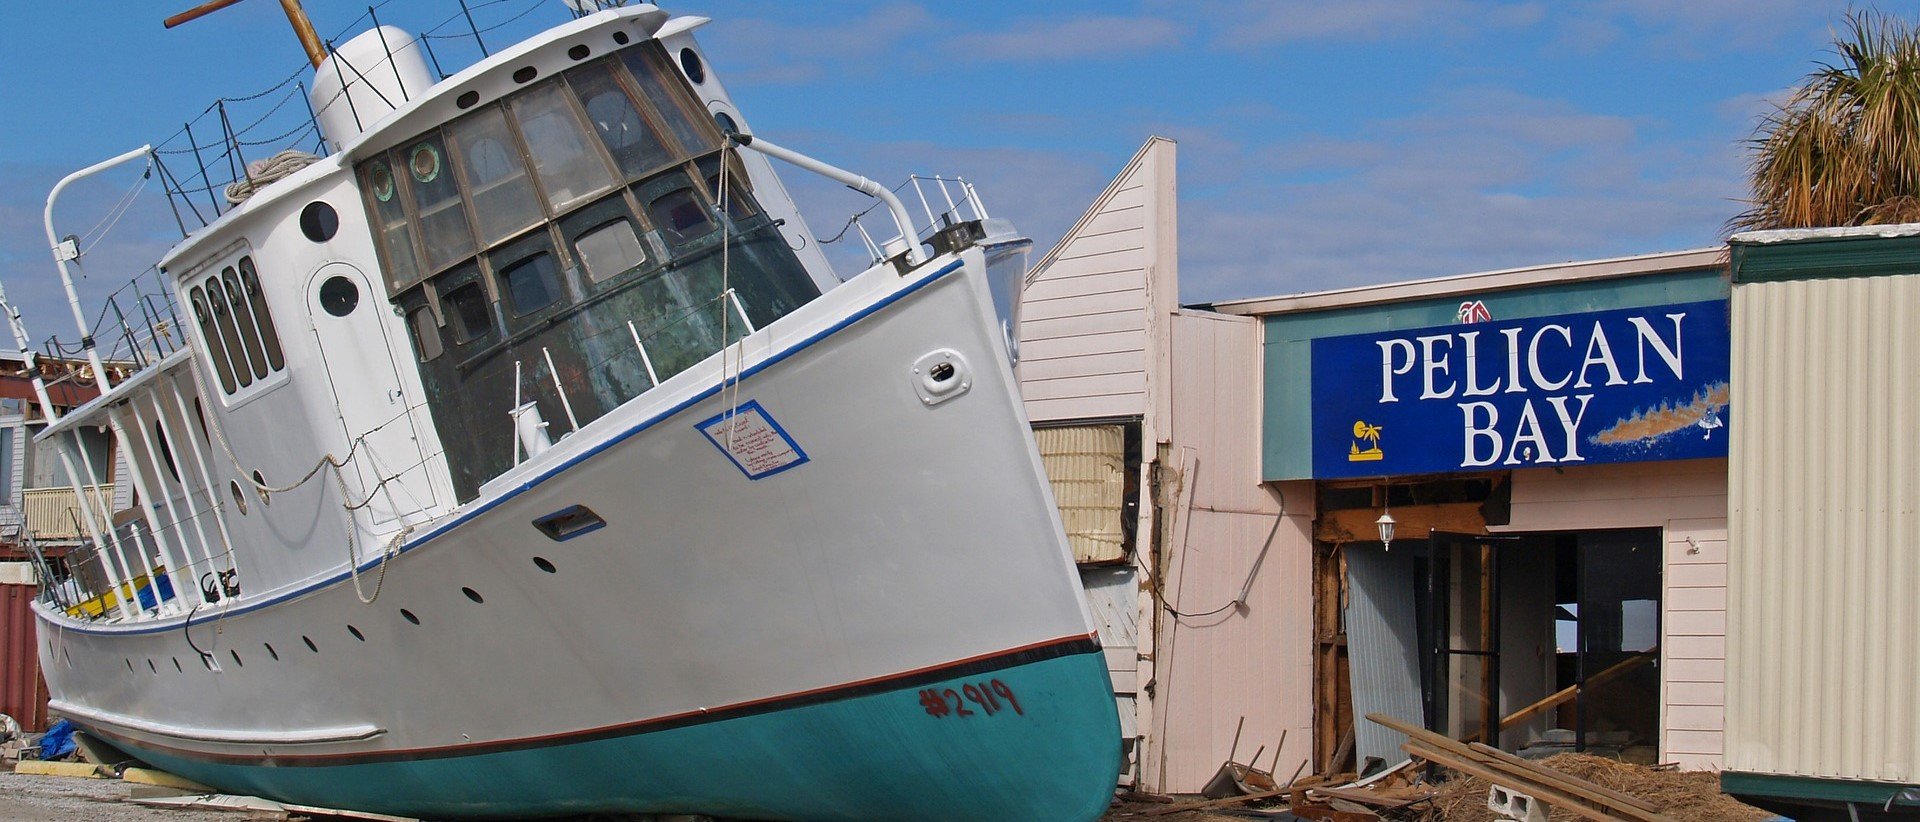 Flood-Damaged Boat in Pelican Bay - VeteranCarDonations.org